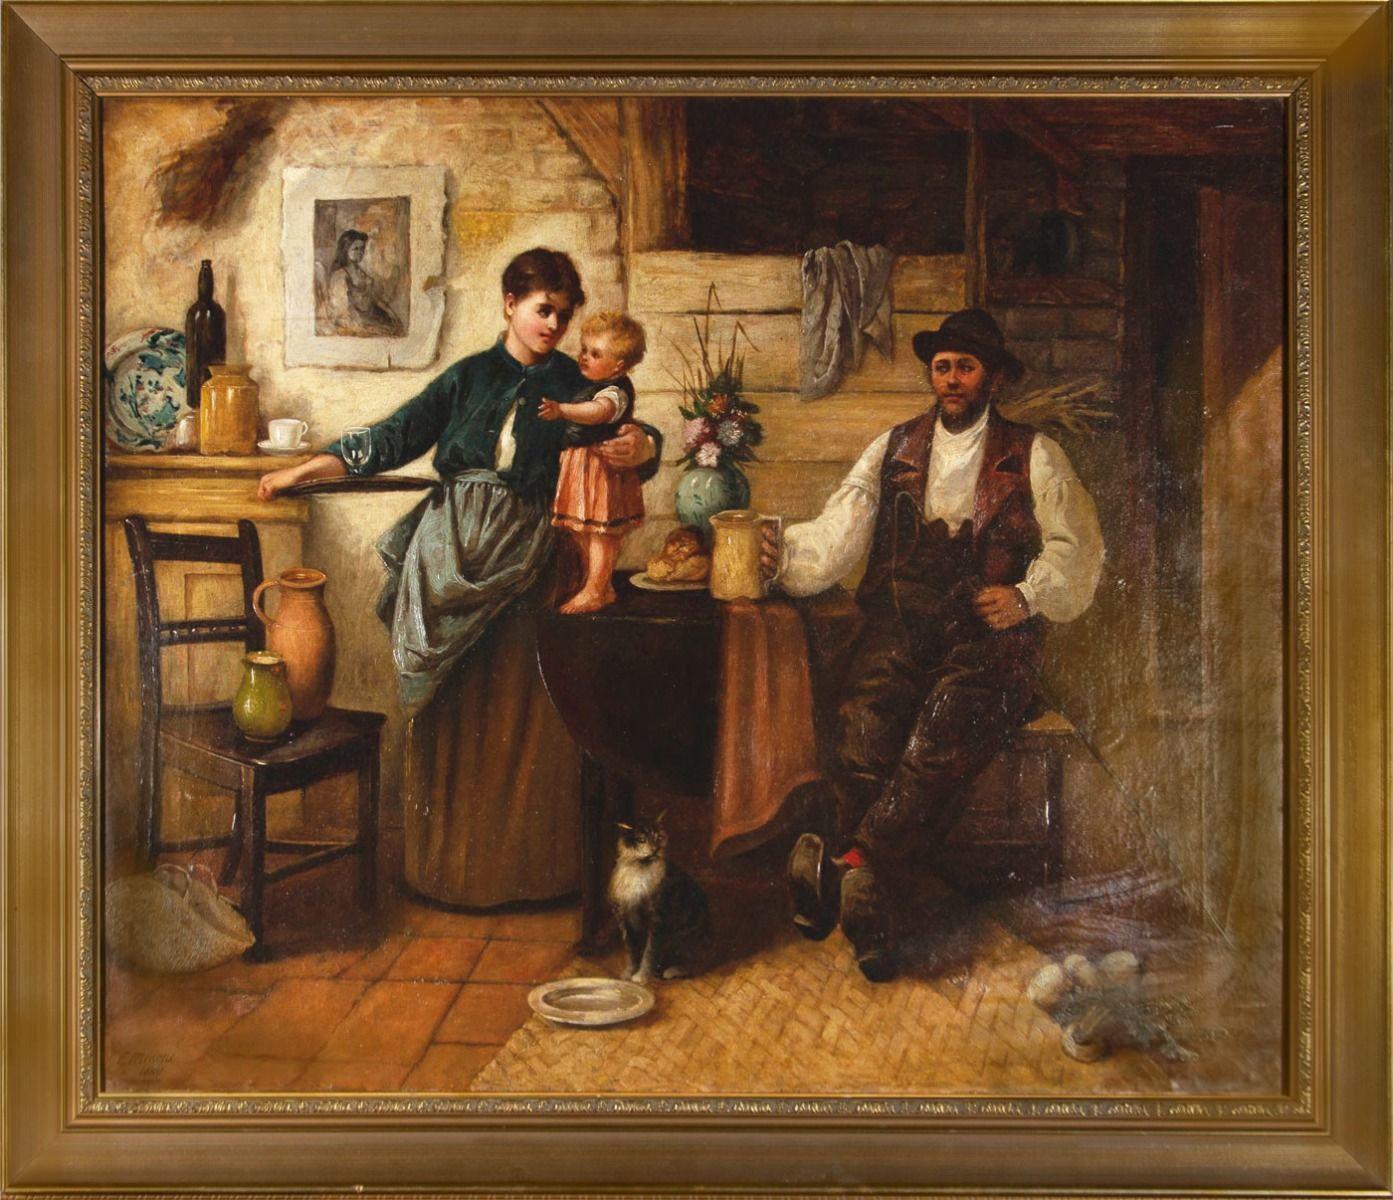 Une scène d'intérieur à l'huile réconfortante de la peintre britannique Fanny Mearns. La scène montre l'intérieur rustique d'une cuisine de ferme. Le père s'est assis sur une chaise, tenant encore sa récolte, après une journée de travail, conduisant